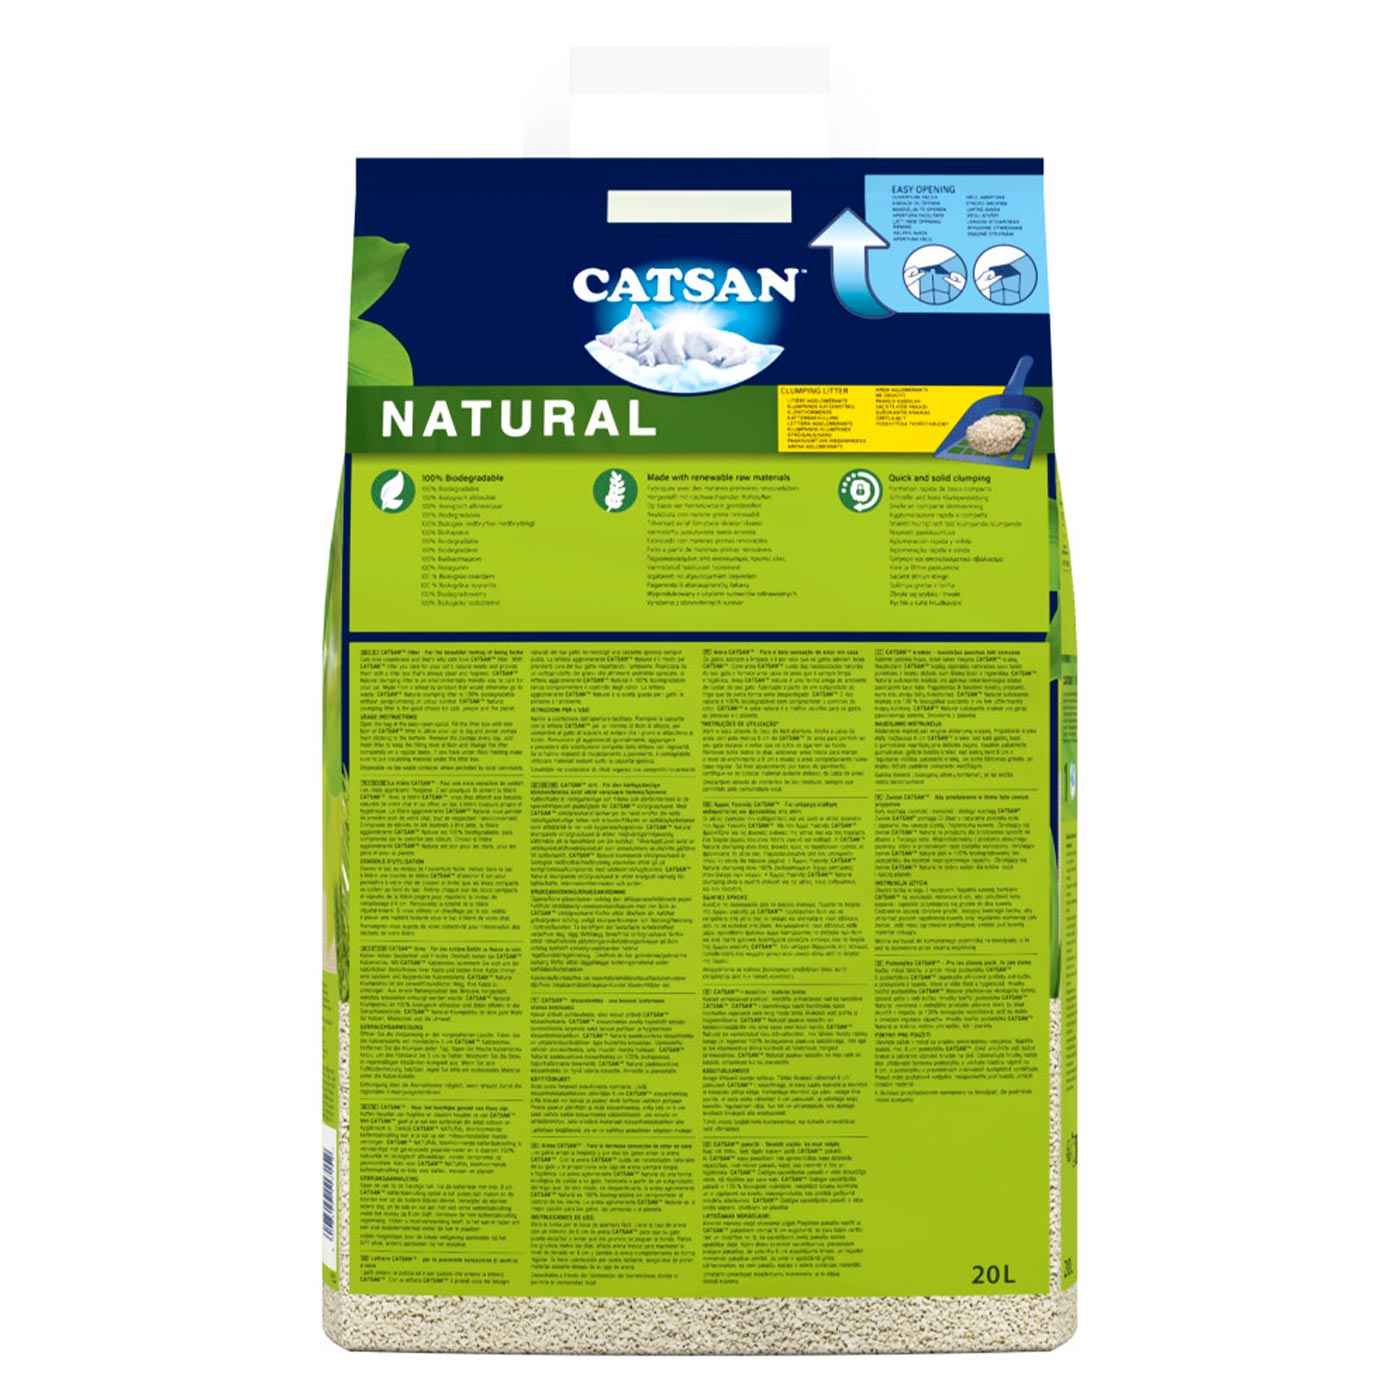 CATSAN Natural Biodegradable Clumping Cat Litter 20L